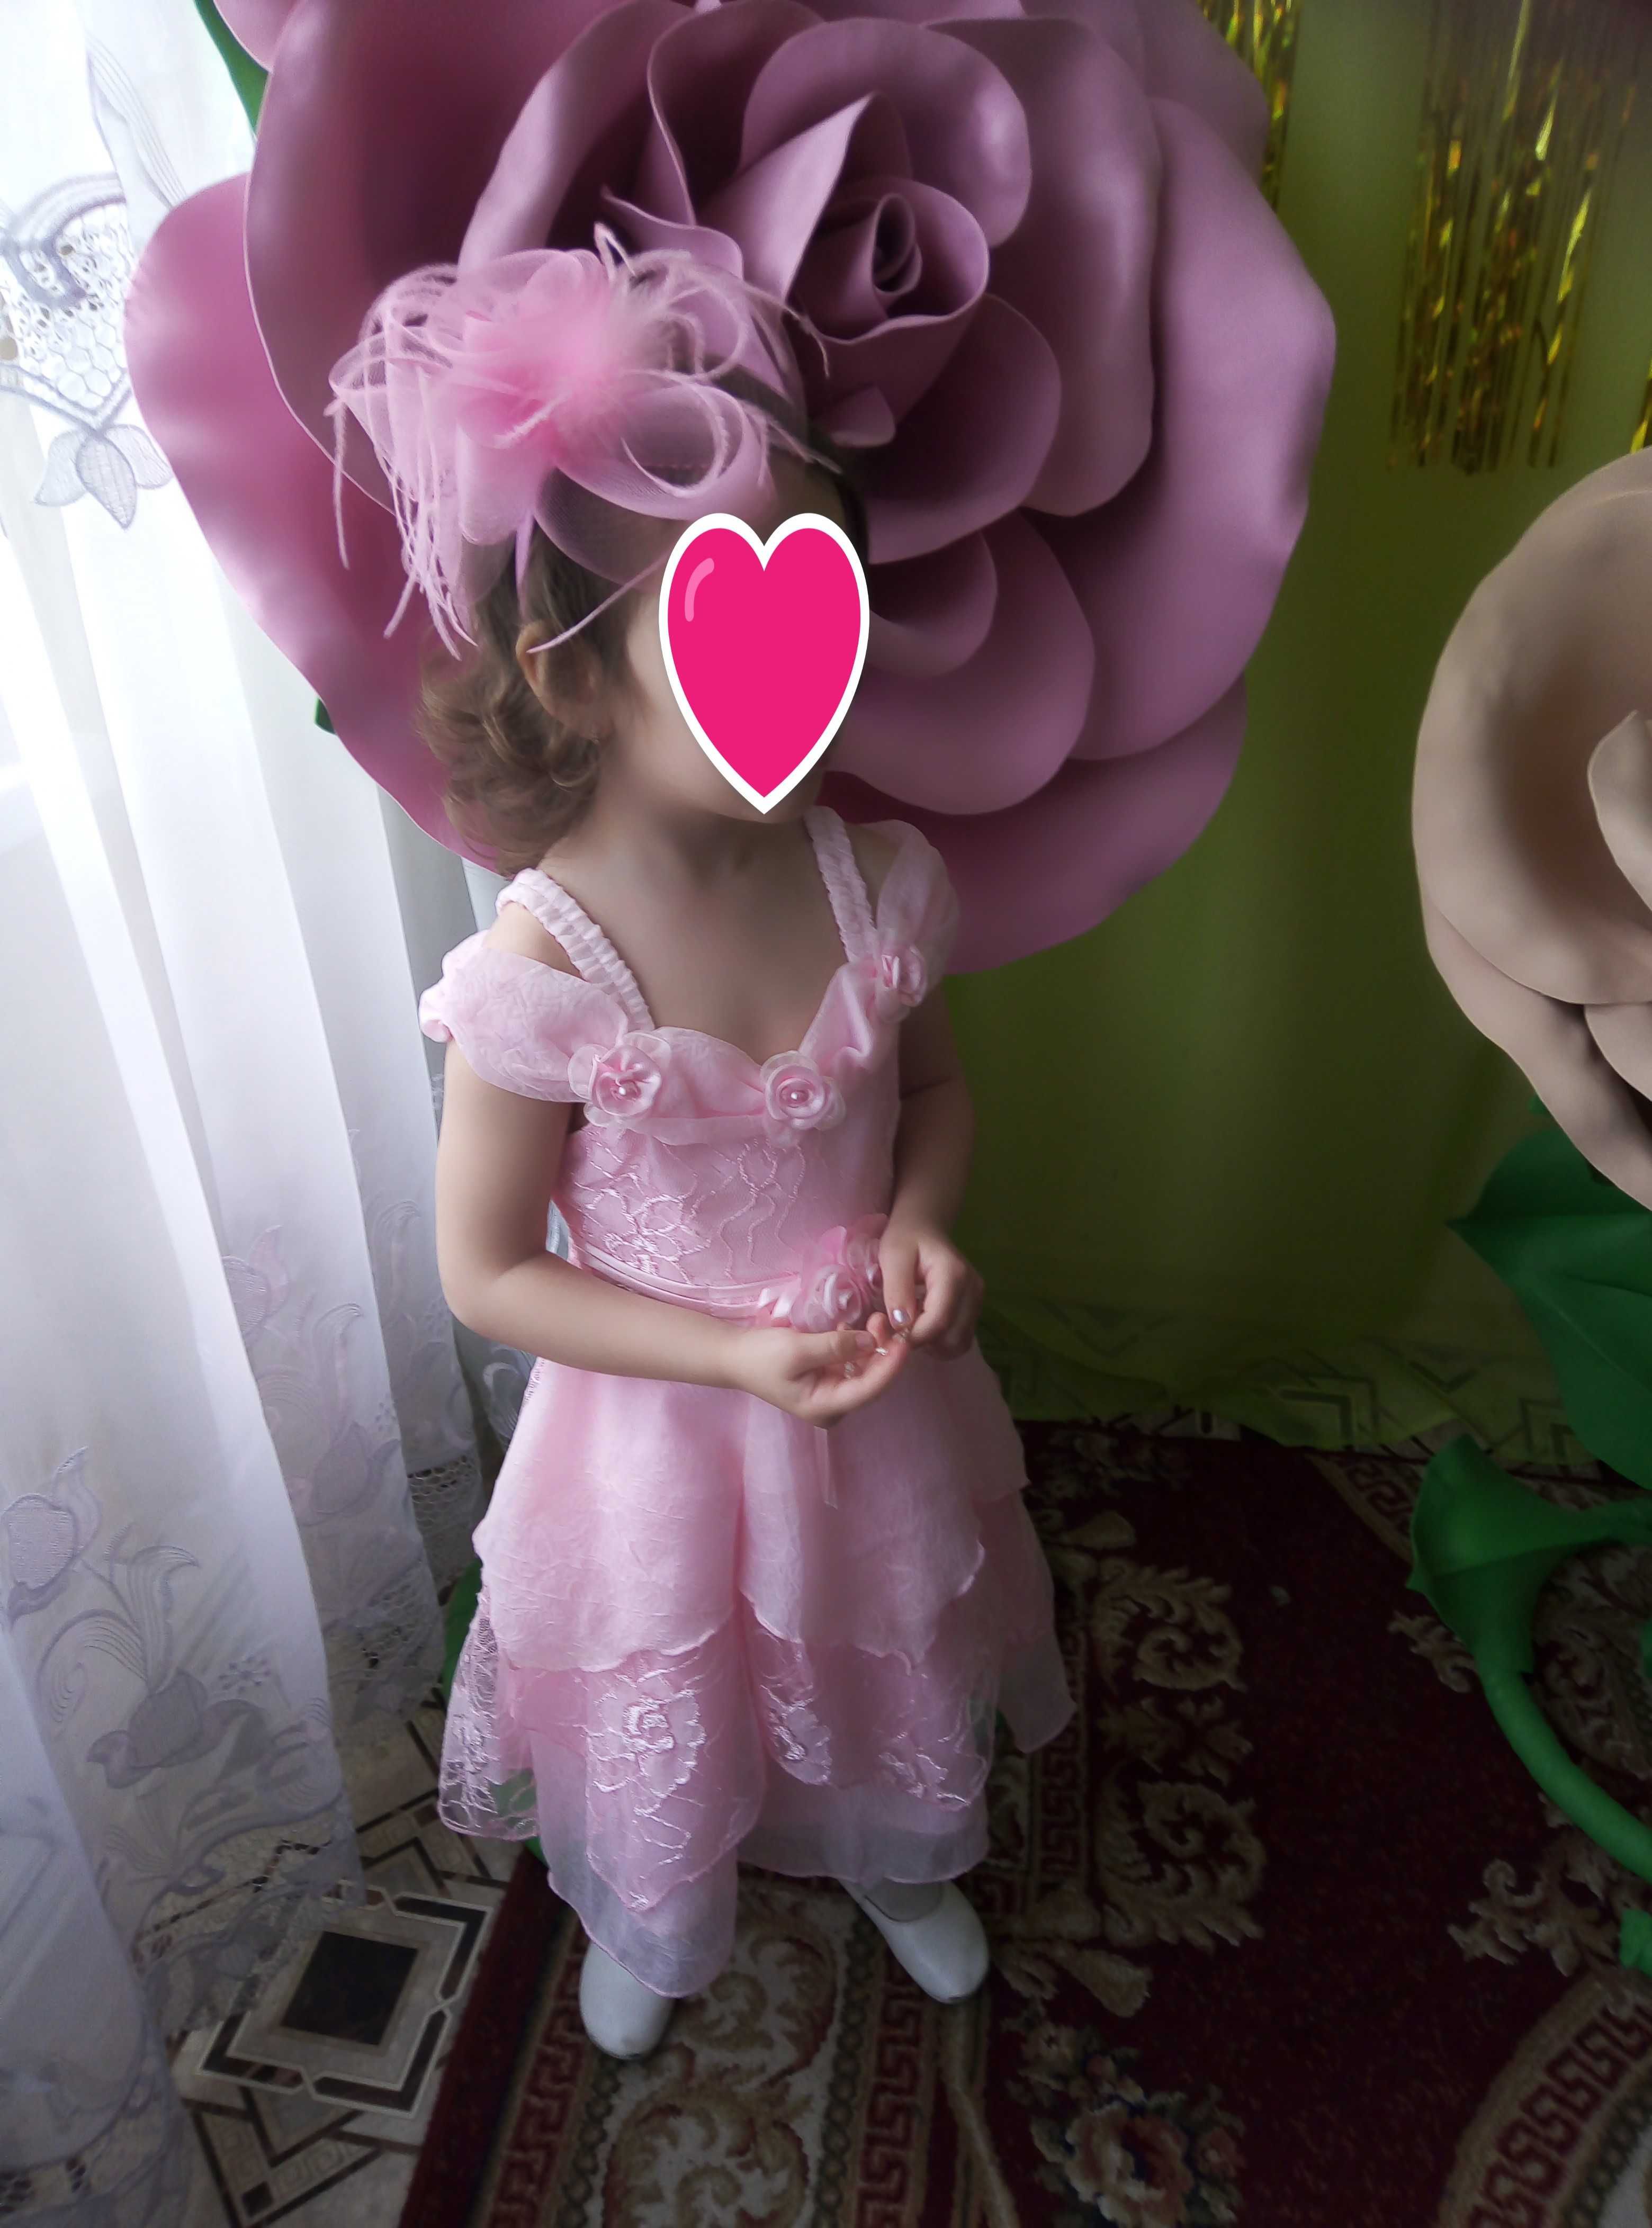 Красивое розовое платье fashion style на рост 98 - 104 см утренник